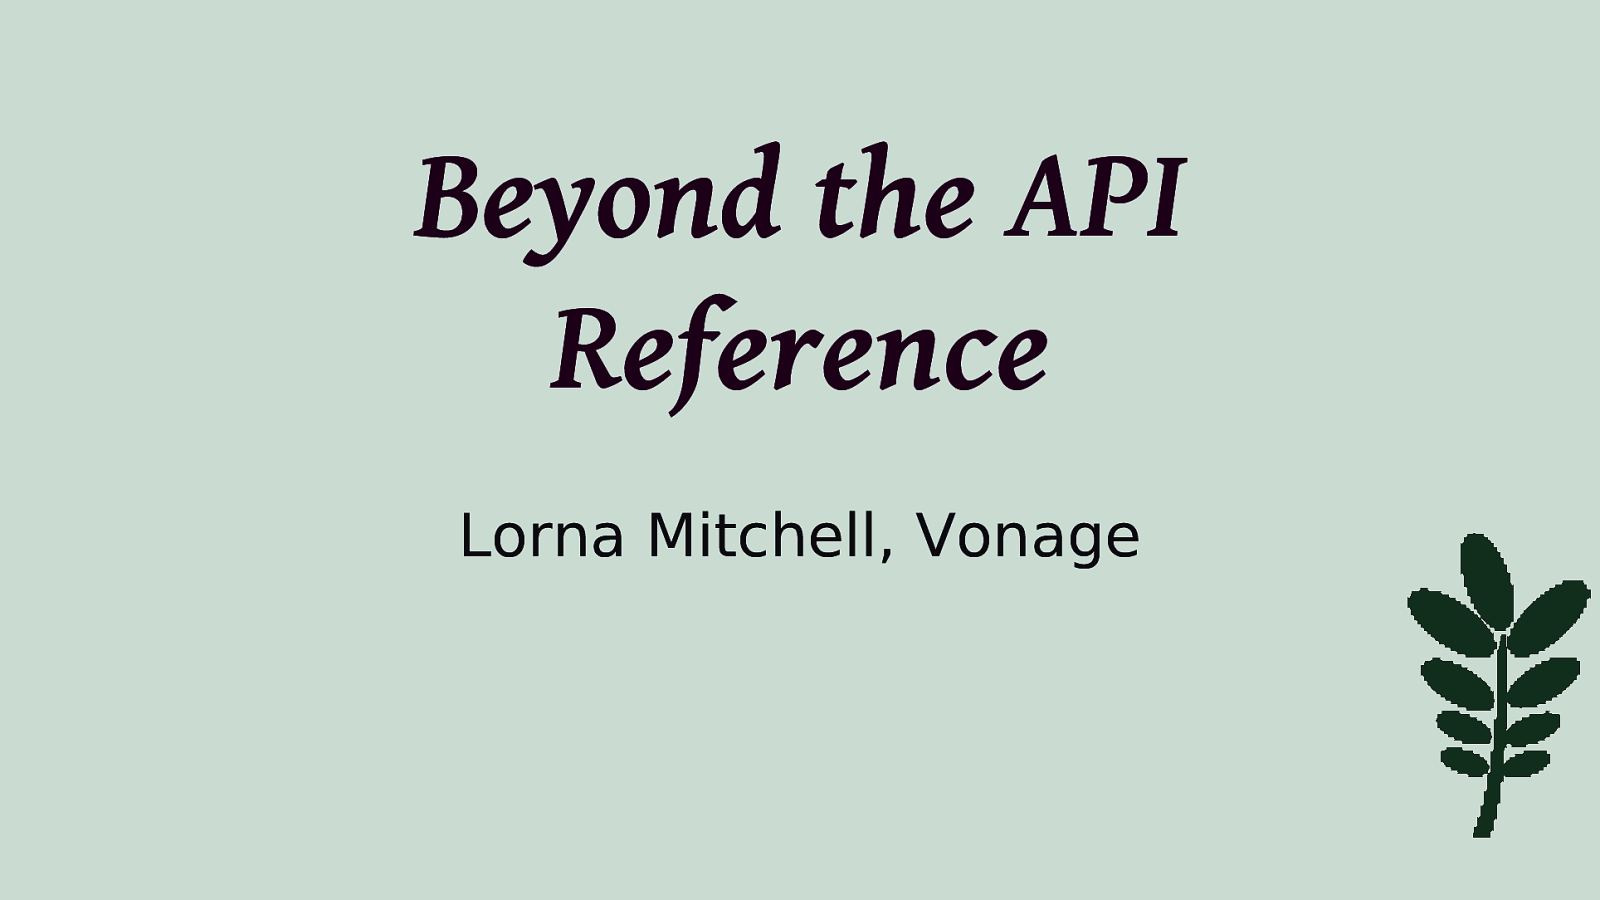 Beyond the API Reference